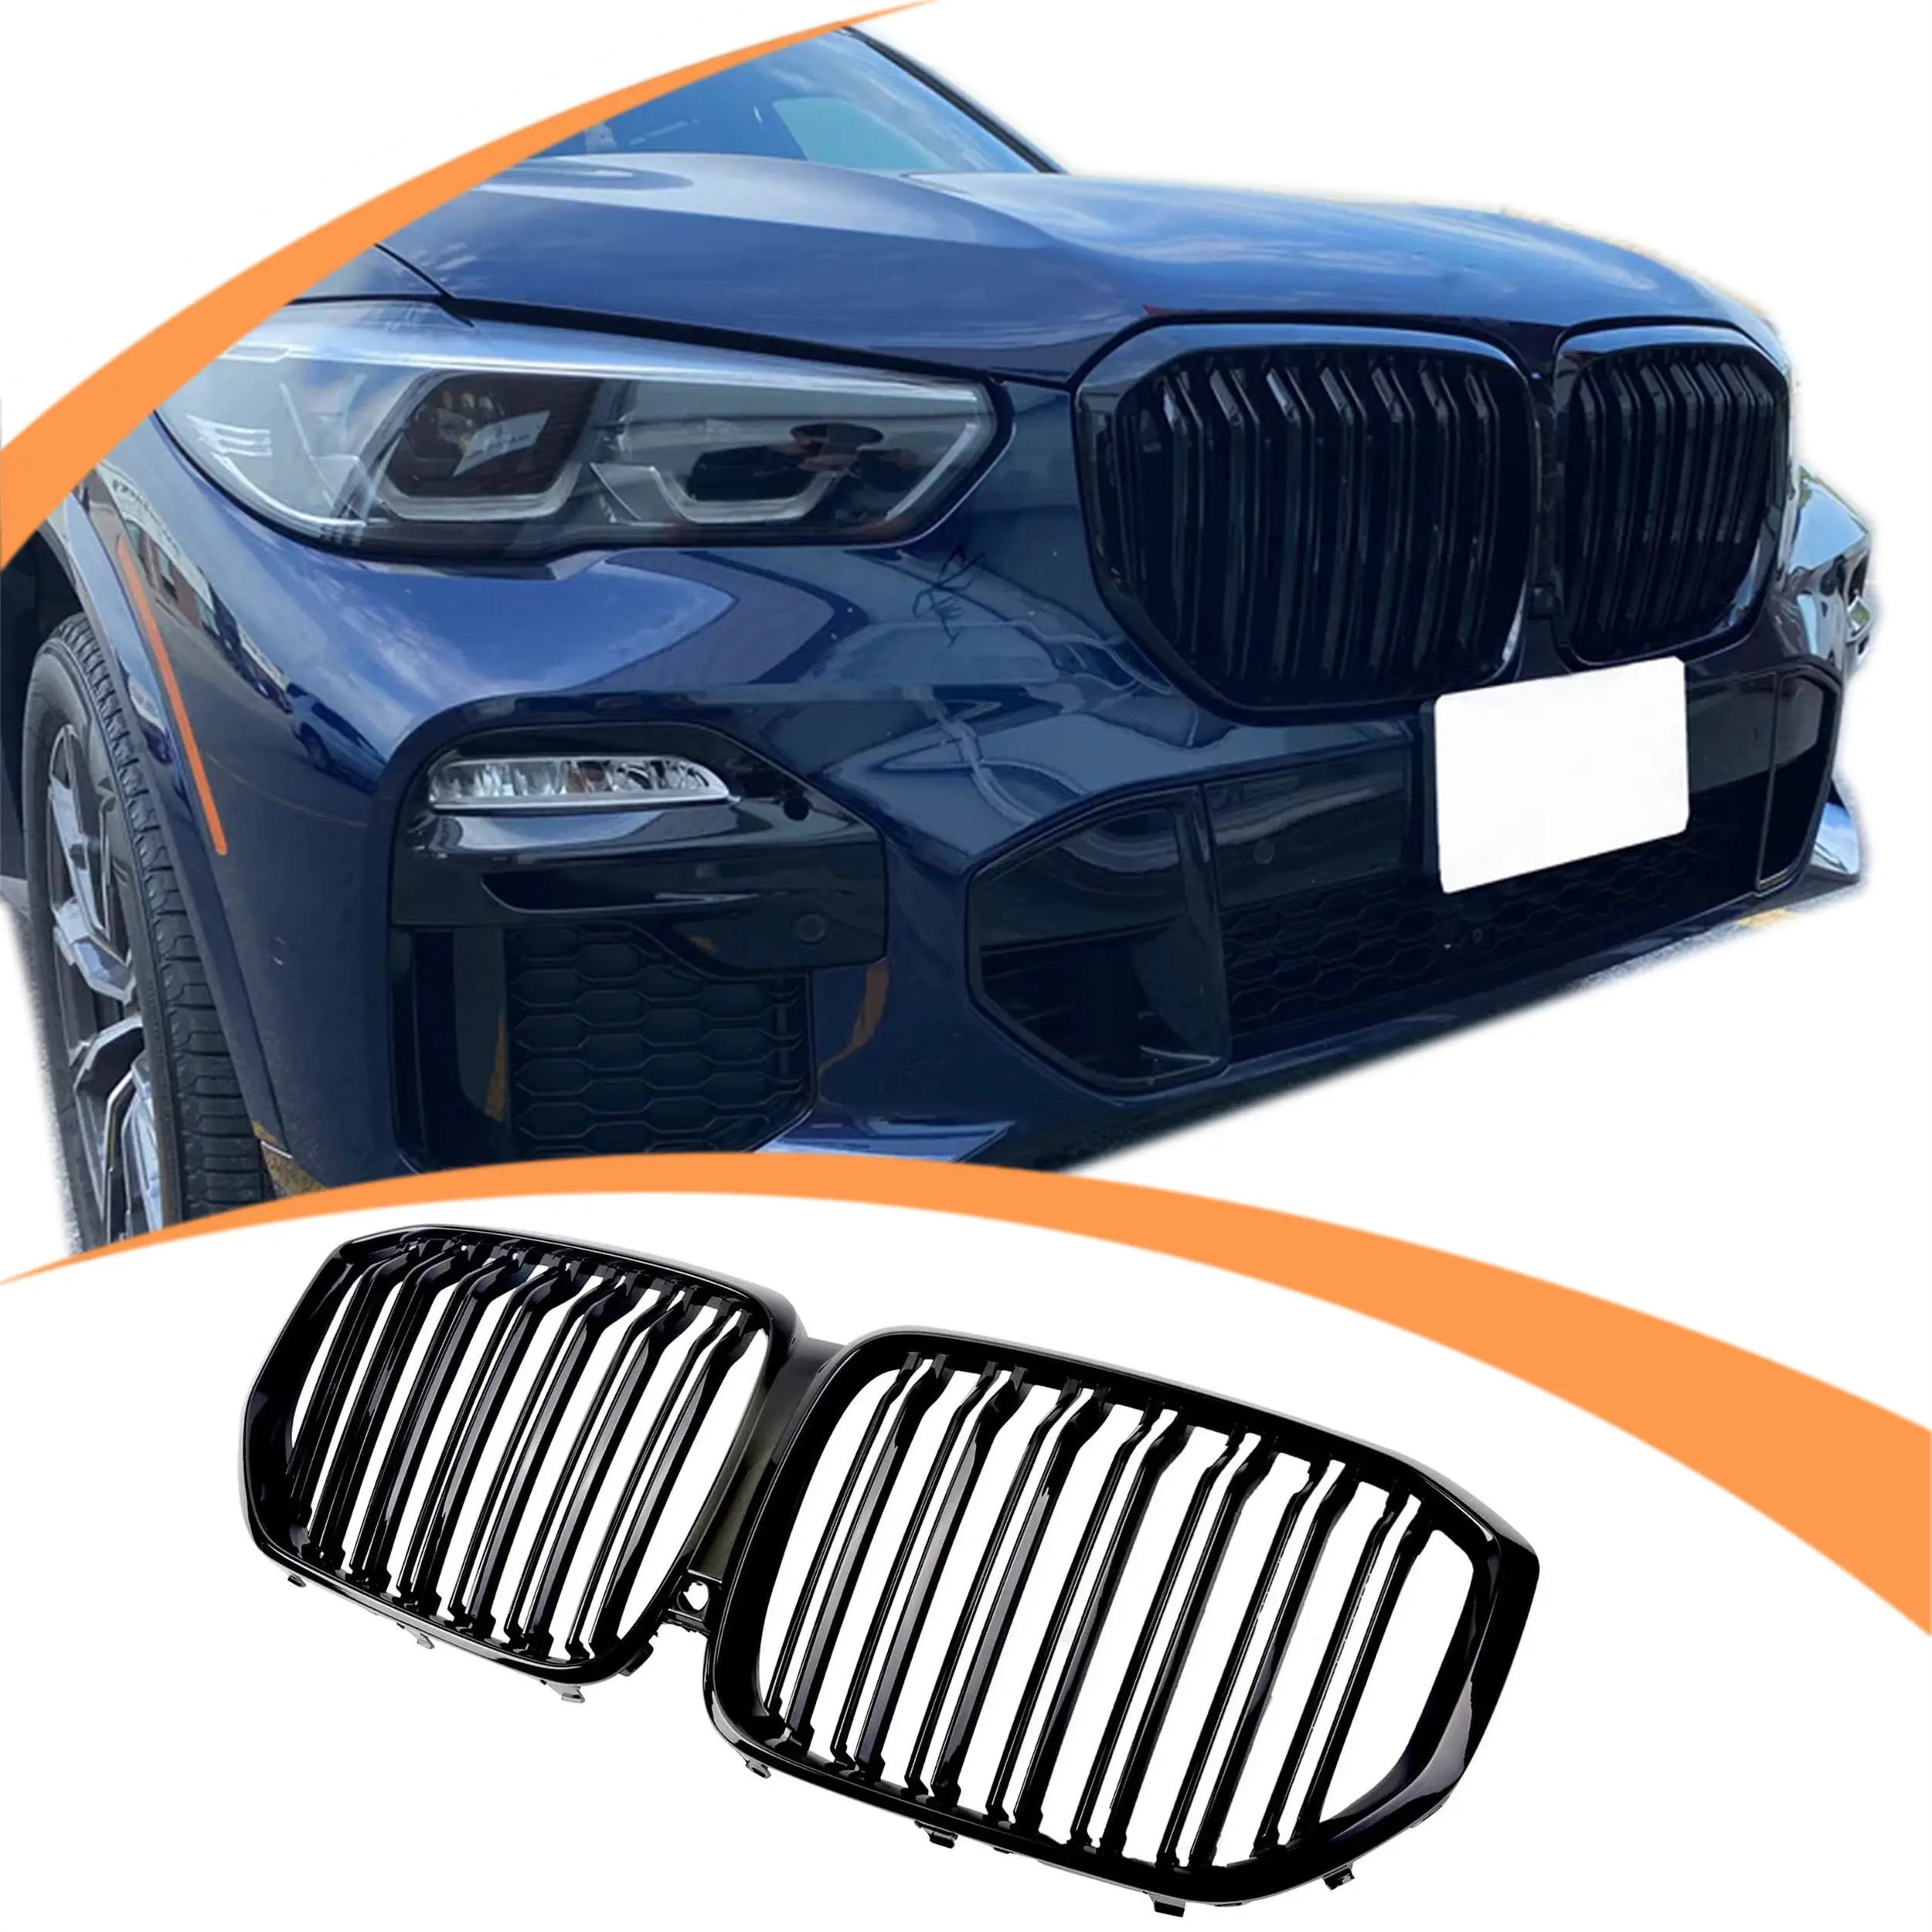 공장 제조 최저 가격 자동차 부품 도매 광택 블랙 더블 라인 앞 범퍼 그릴 BMW X5 시리즈 G05 2020 +